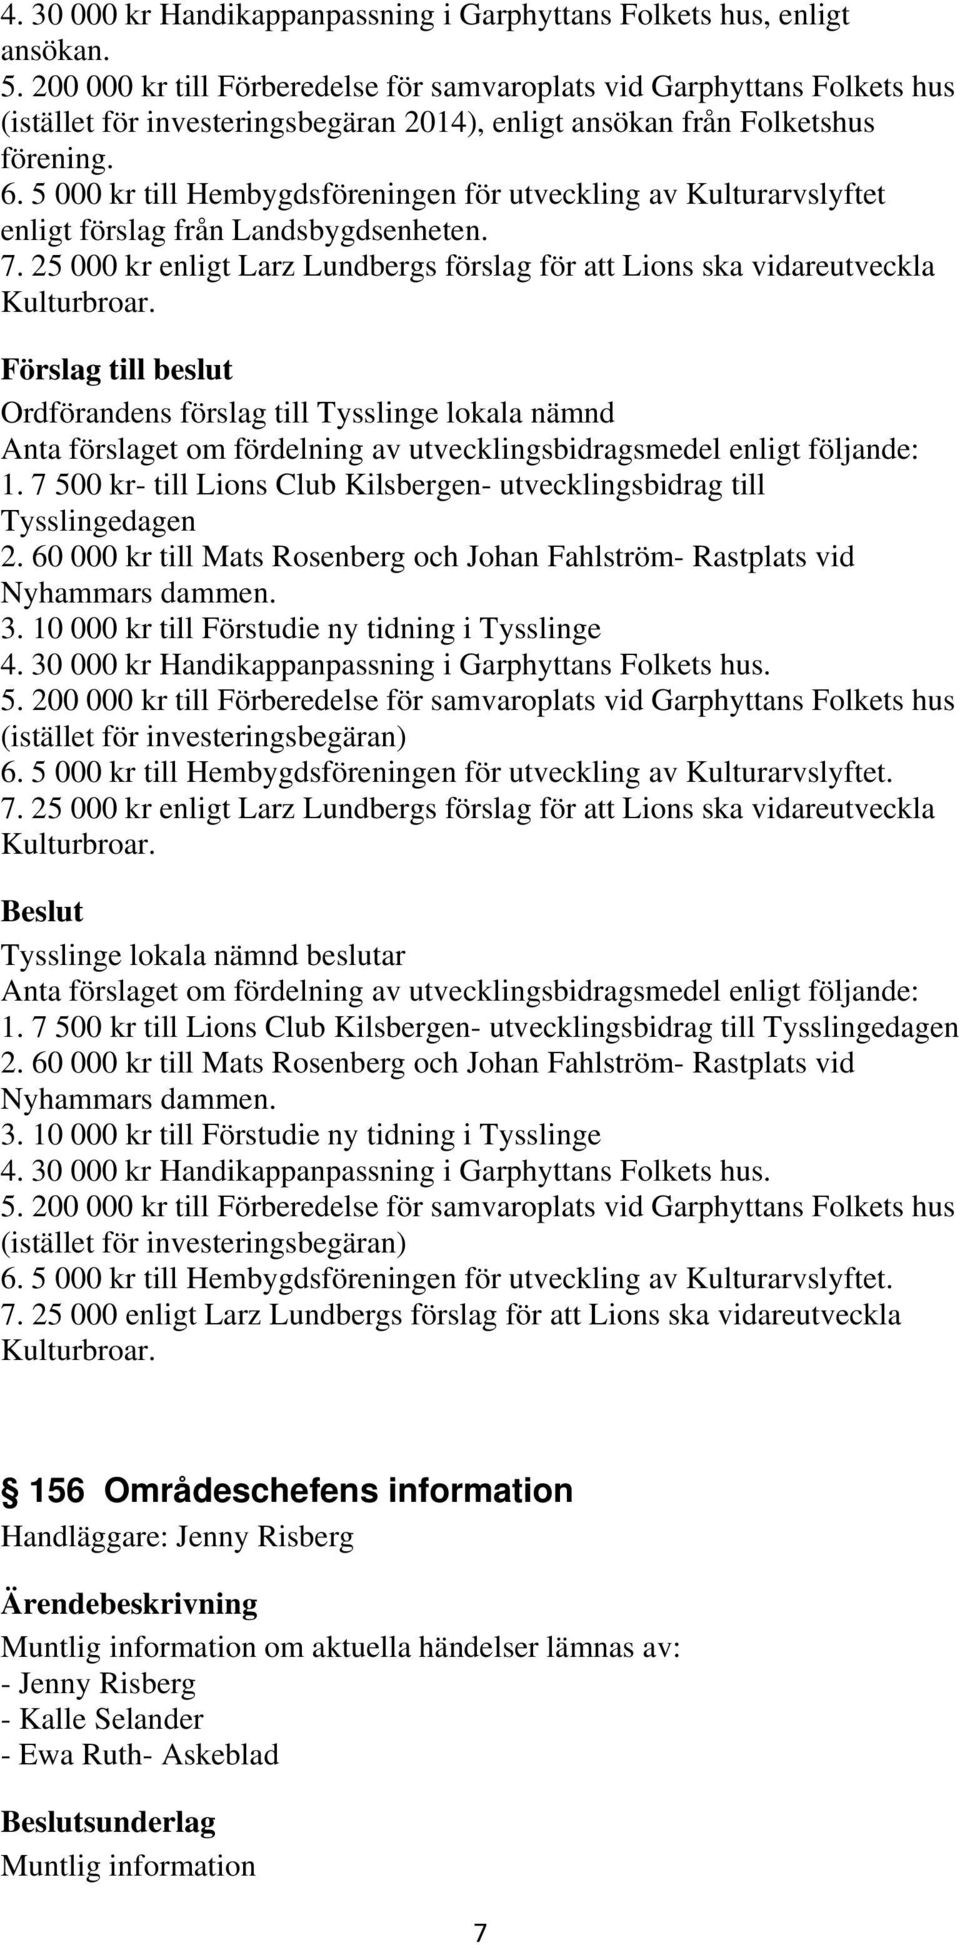 5 000 kr till Hembygdsföreningen för utveckling av Kulturarvslyftet enligt förslag från Landsbygdsenheten. 7. 25 000 kr enligt Larz Lundbergs förslag för att Lions ska vidareutveckla Kulturbroar.